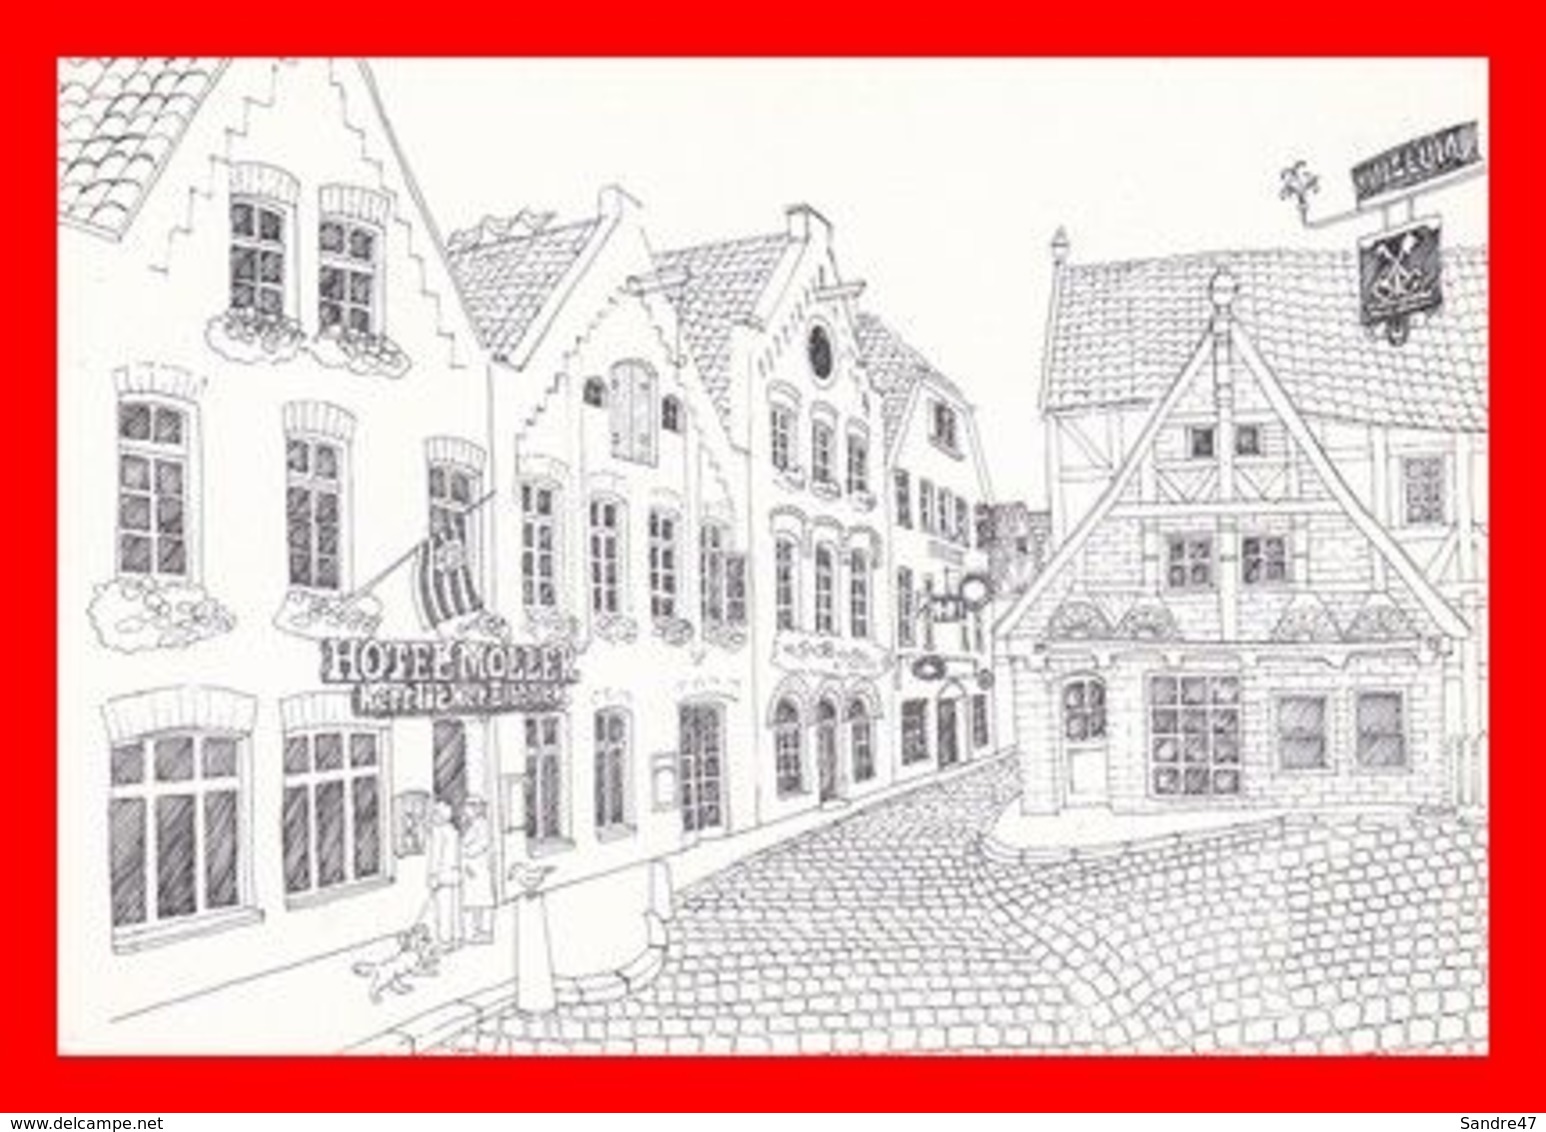 CPSM/gf  LAUENBURG (Allemagne) Illustrateur.?. Hotel Möller. Inhaber Helmut F.O. Carstens..*4099 - Lauenburg